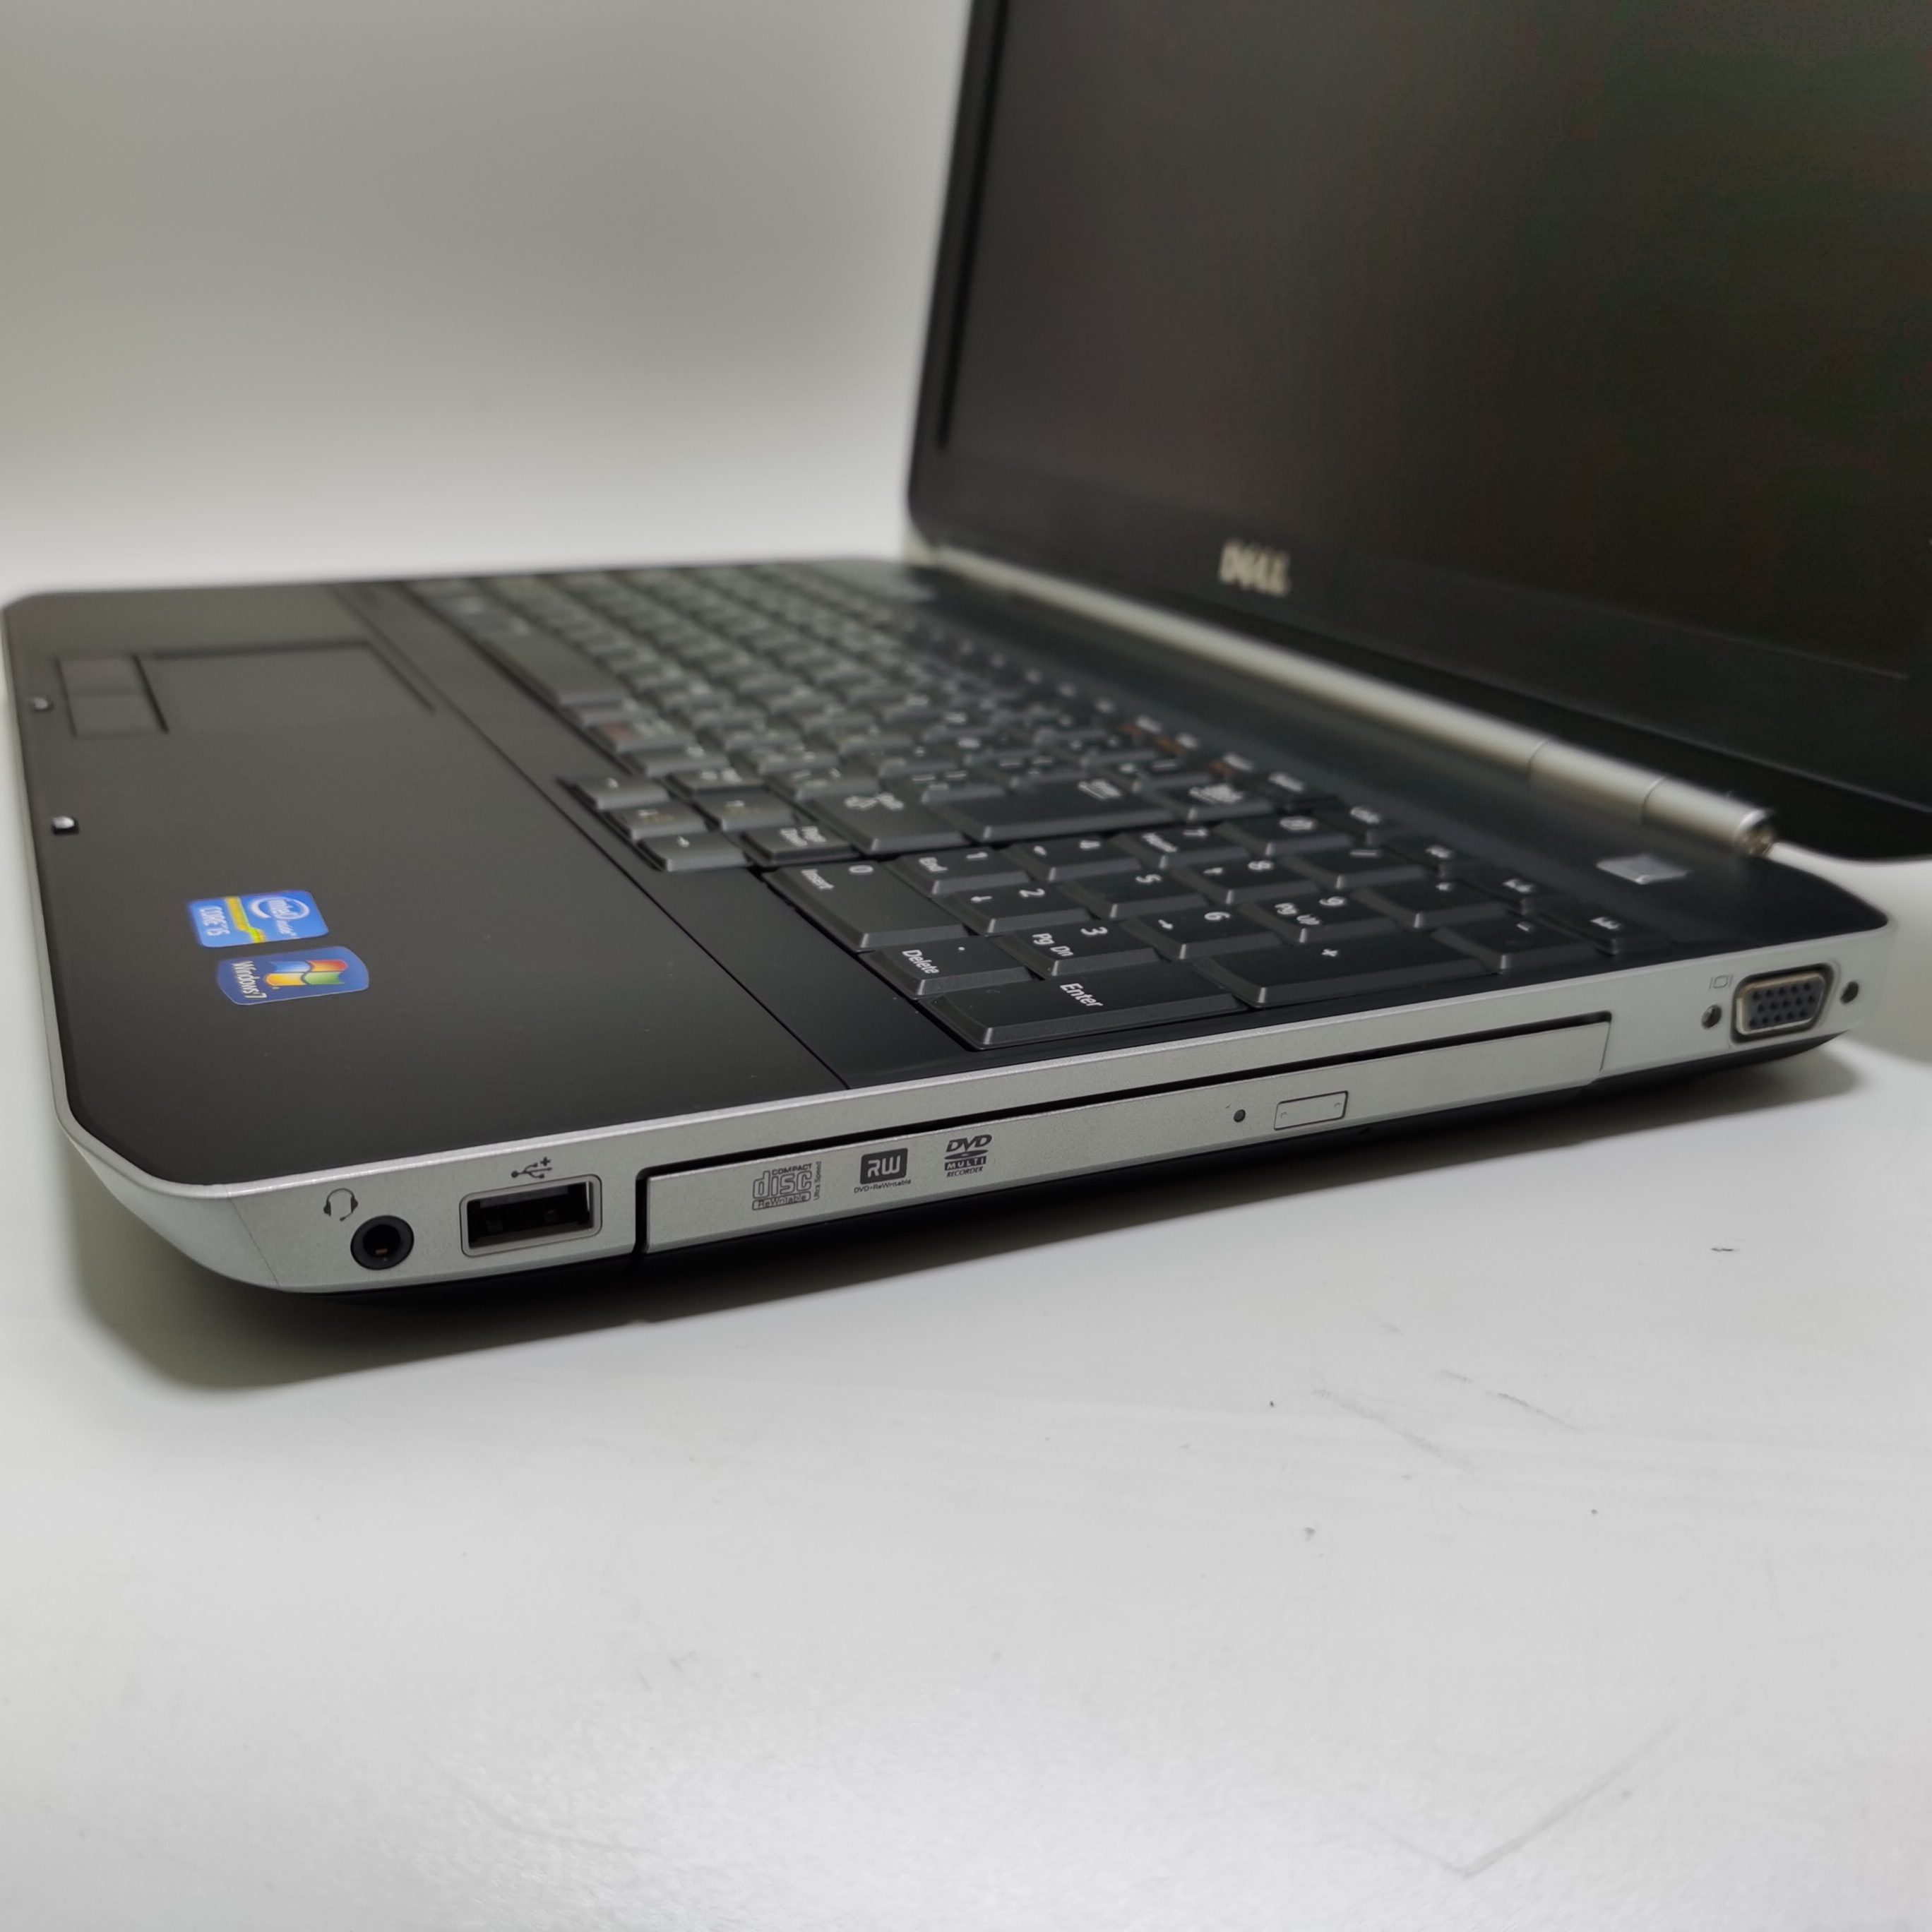 รูปภาพเพิ่มเติมของ โน๊ตบุ๊ค notebook Dell E5530 i5 gen3 15.6 inch  //  Lenovo ThinkPad  M14 โน๊ตบุ๊คมือสอง  โน๊ตบุ๊คถูกๆๆ  คอมพิวเตอร์  คอม  laptop pc